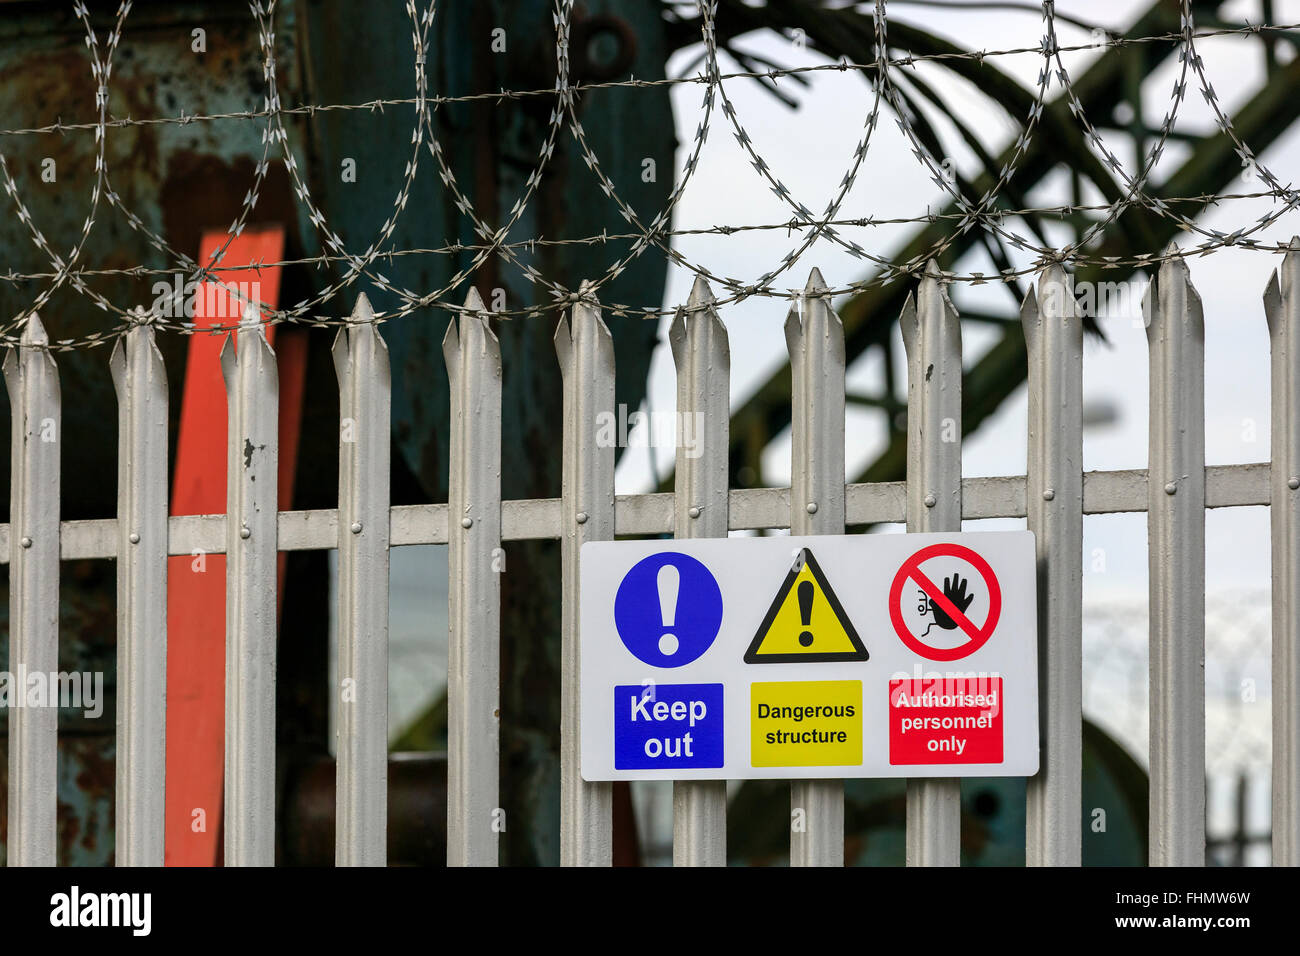 Valla de metal, alambre de espino y señales de peligro en el exterior de un polígono industrial cerrada, cerca de Glasgow, Escocia, Reino Unido Foto de stock